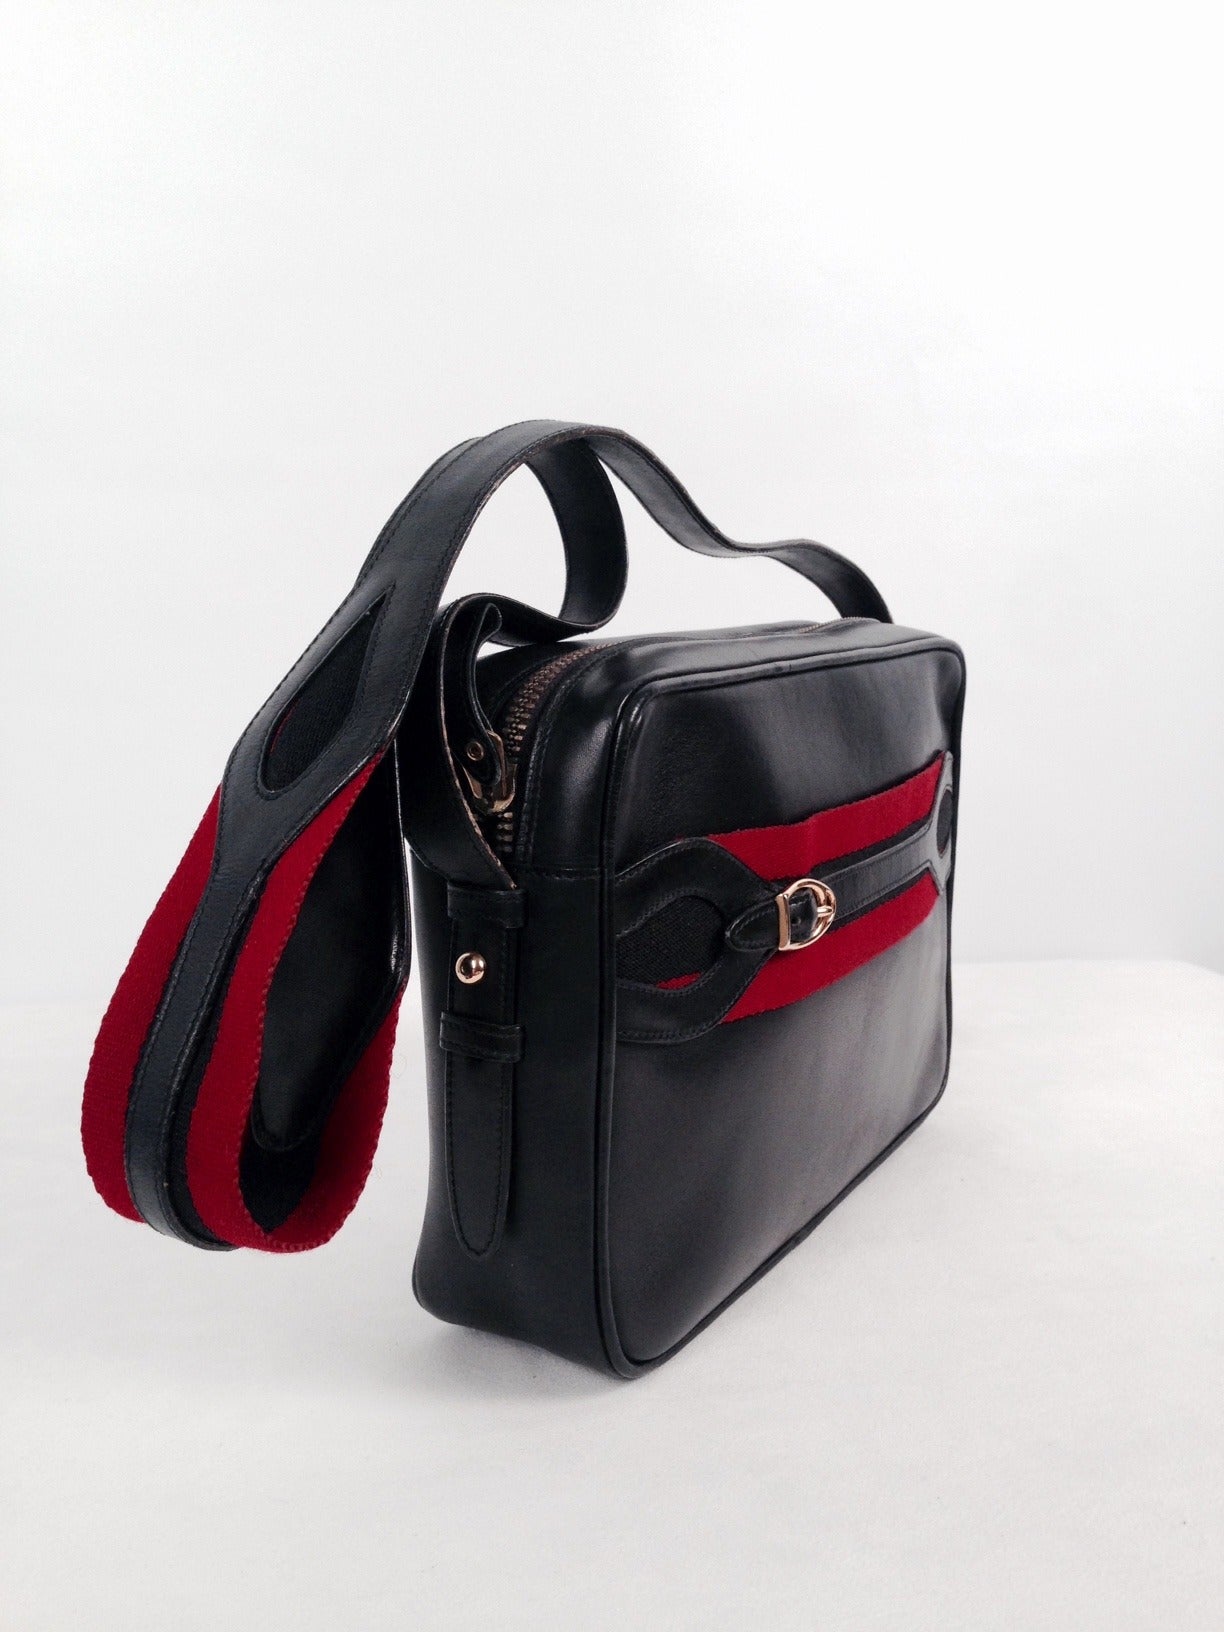 Vintage Gucci Black Leather Camera Bag For Sale at 1stdibs